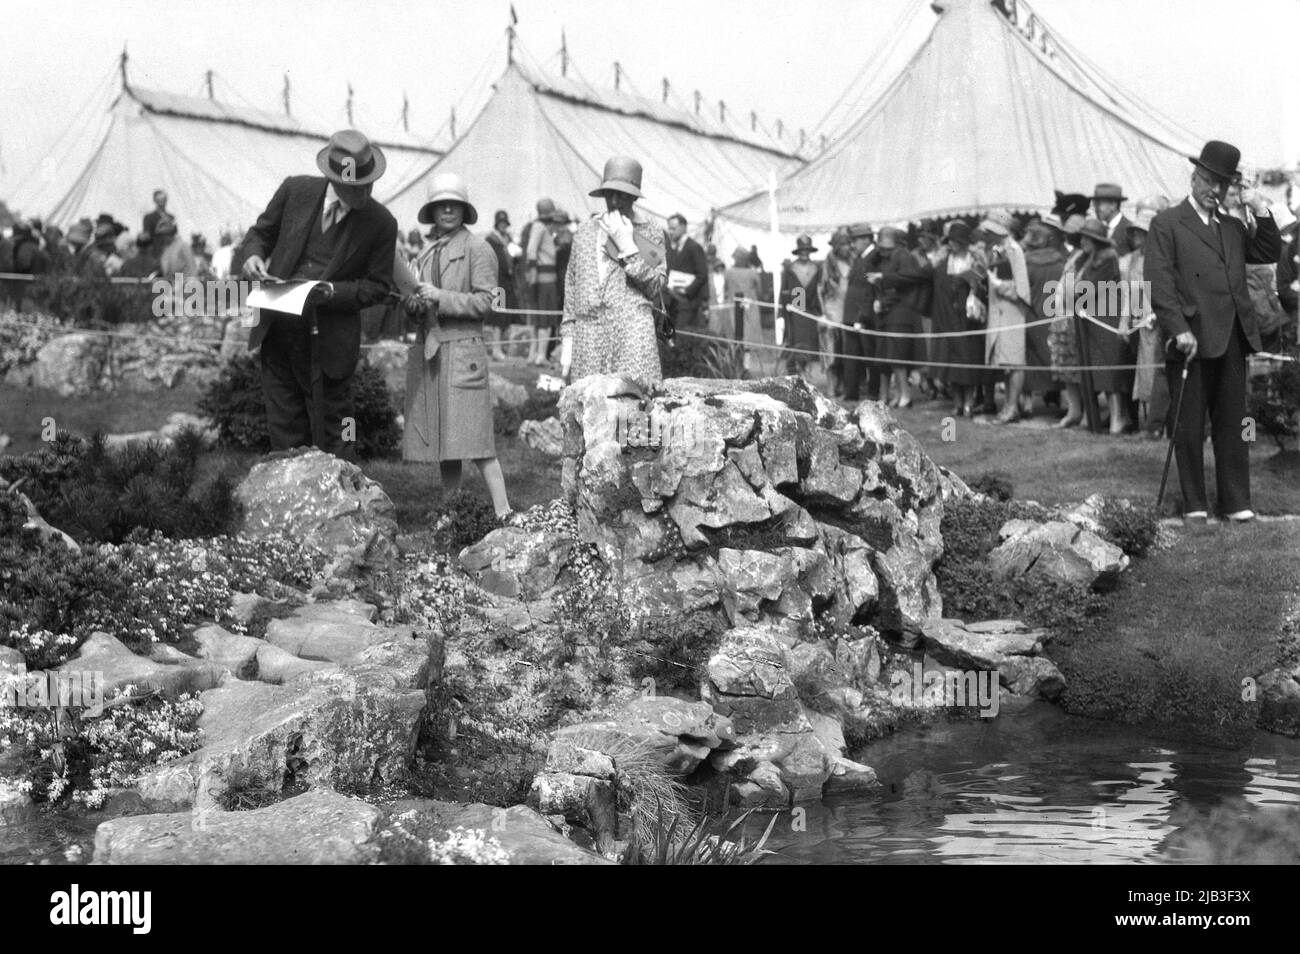 1929, historische, in formelle Kleidung und Hüte gekleidete Menschen der Ära, die an der Chelsea Flower Show, London, England, Großbritannien, teilnahmen, mit Richtern, die ein steiniges Poolspiel studierten. Stockfoto